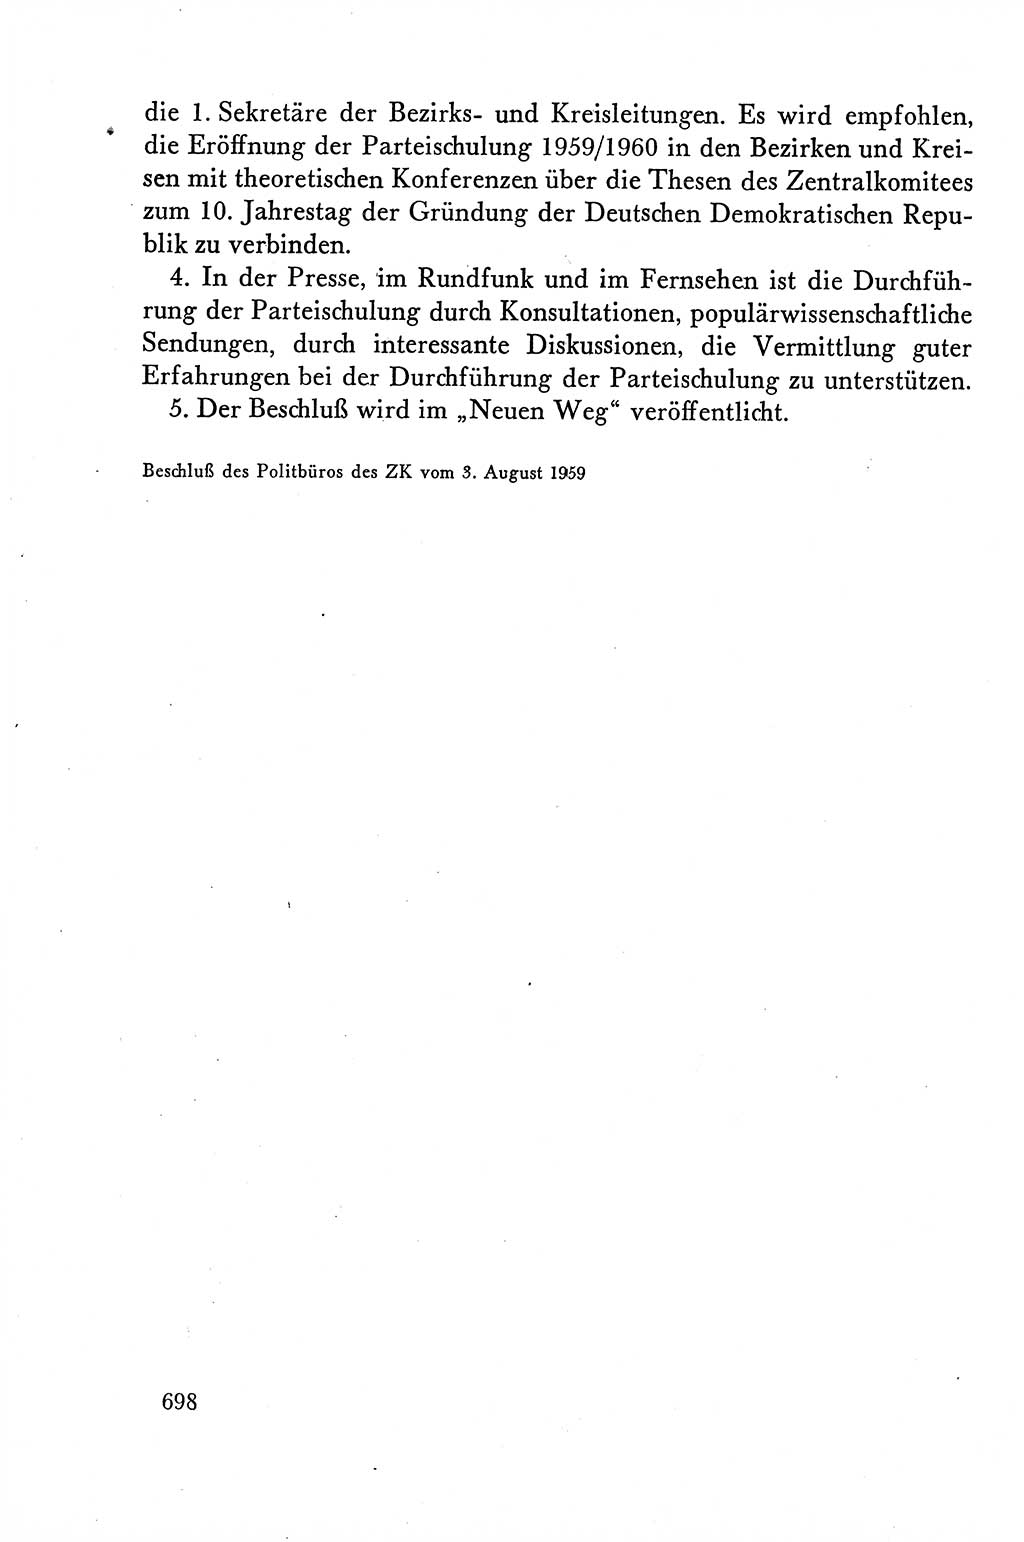 Dokumente der Sozialistischen Einheitspartei Deutschlands (SED) [Deutsche Demokratische Republik (DDR)] 1958-1959, Seite 698 (Dok. SED DDR 1958-1959, S. 698)